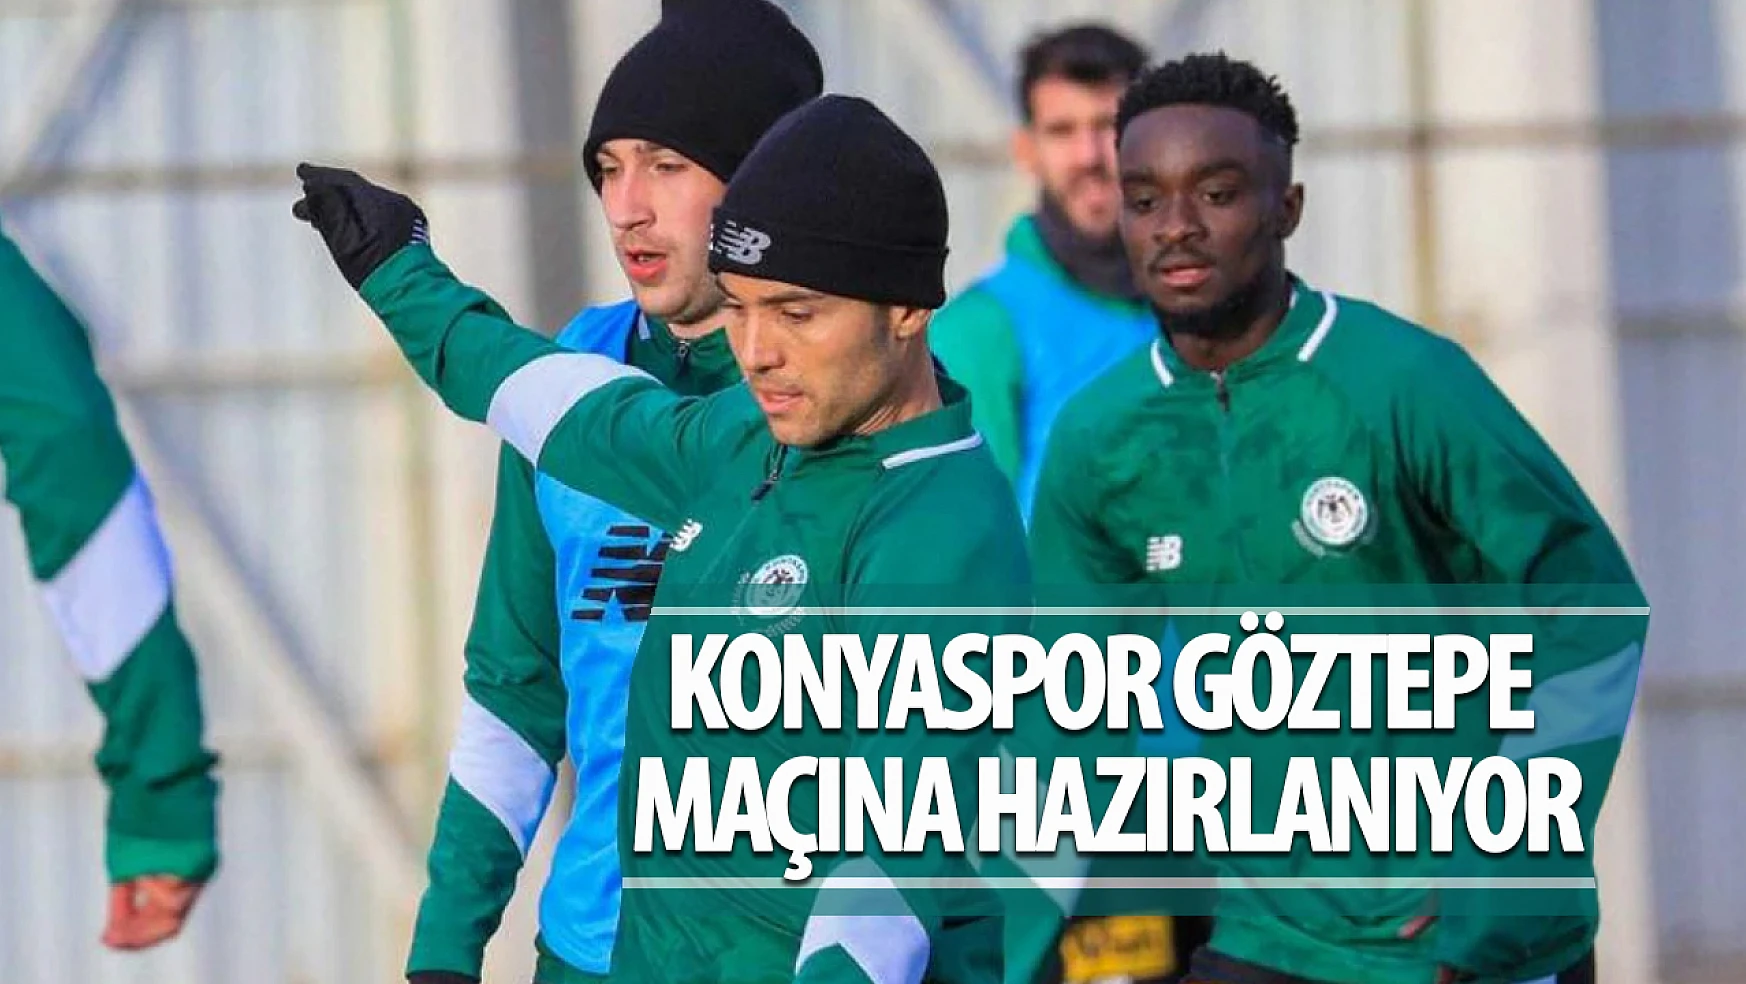 Konyaspor, Göztepe maçı hazırlıklarını sürdürdü!